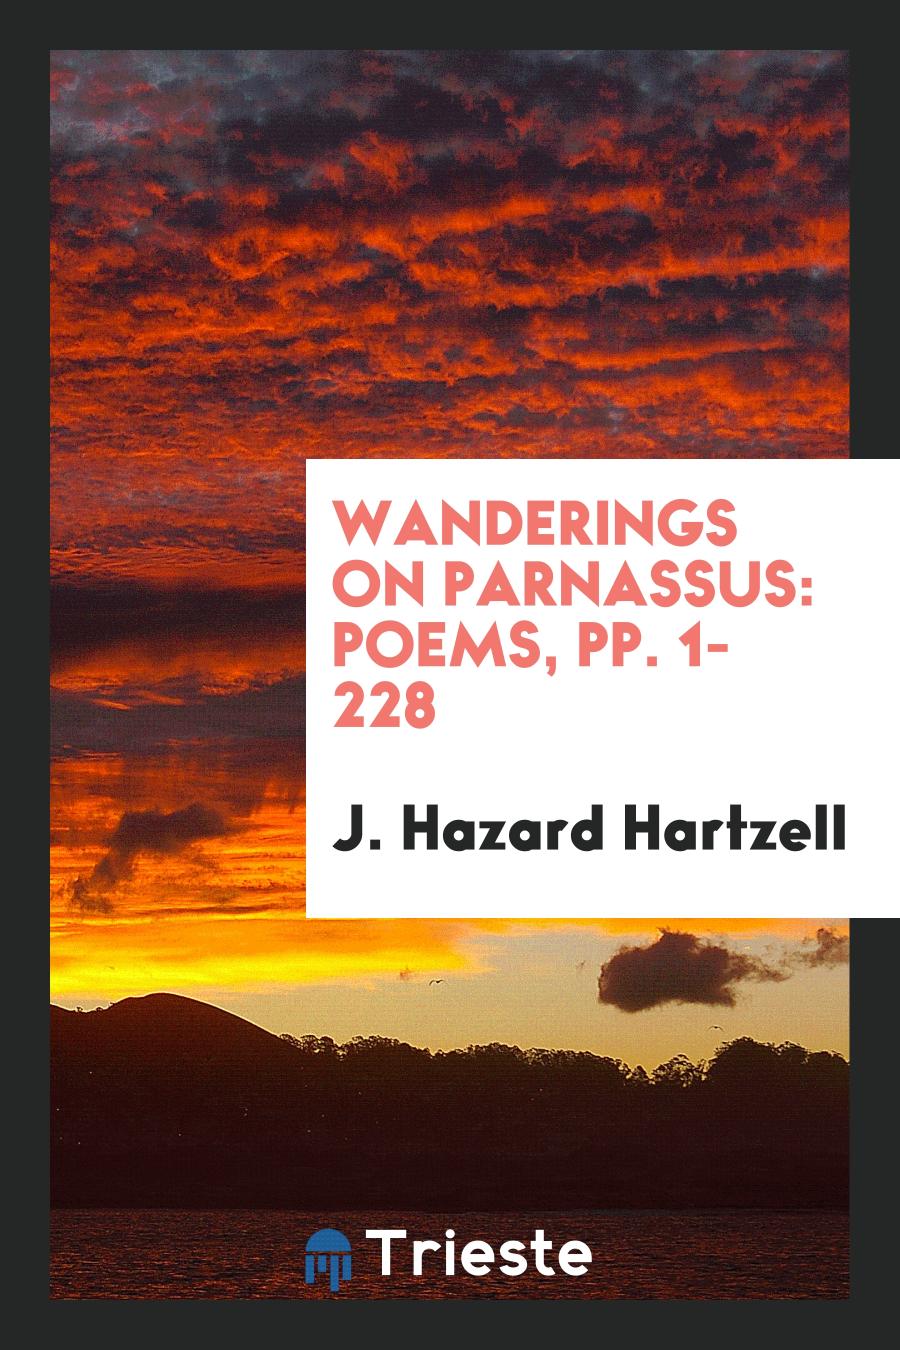 Wanderings on Parnassus: Poems, pp. 1-228